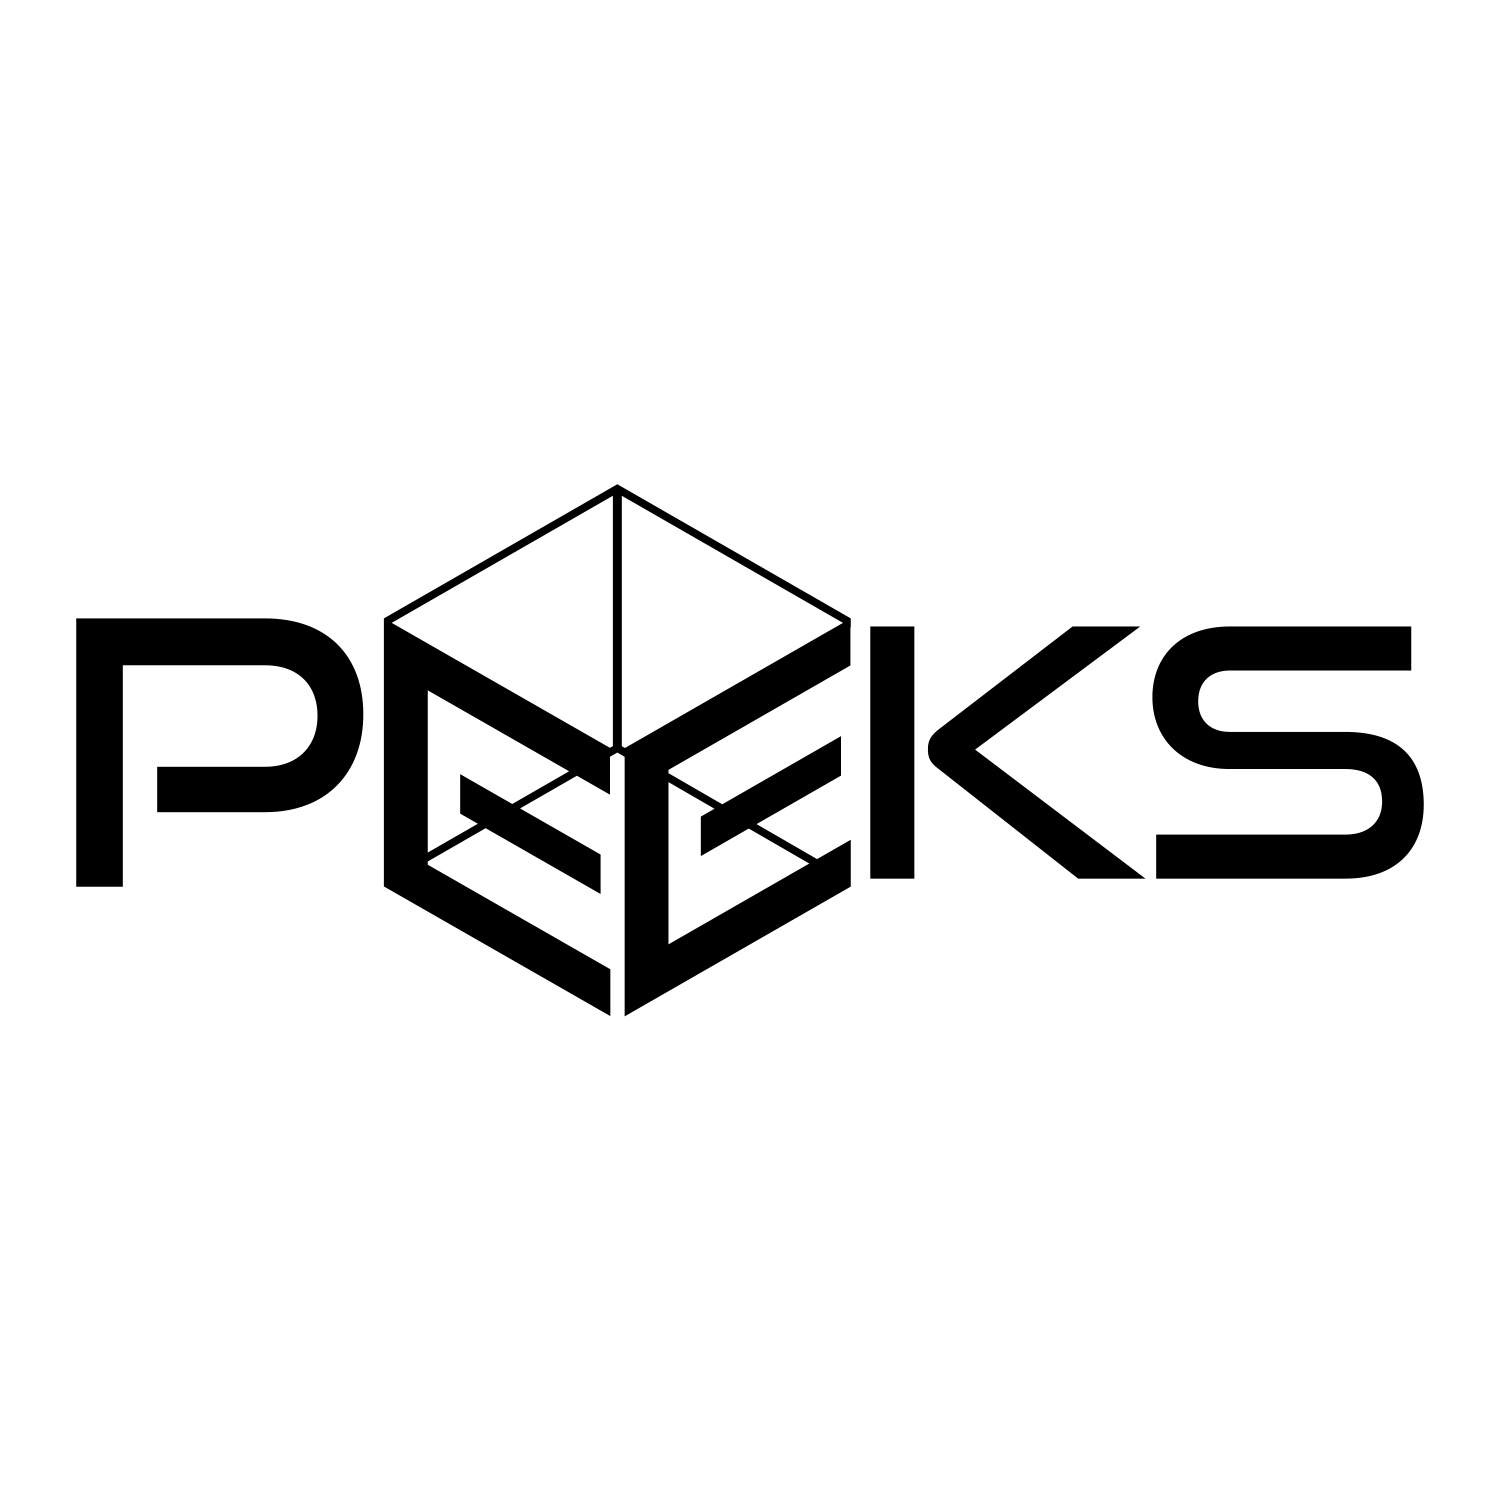  Design for PEEKS
 